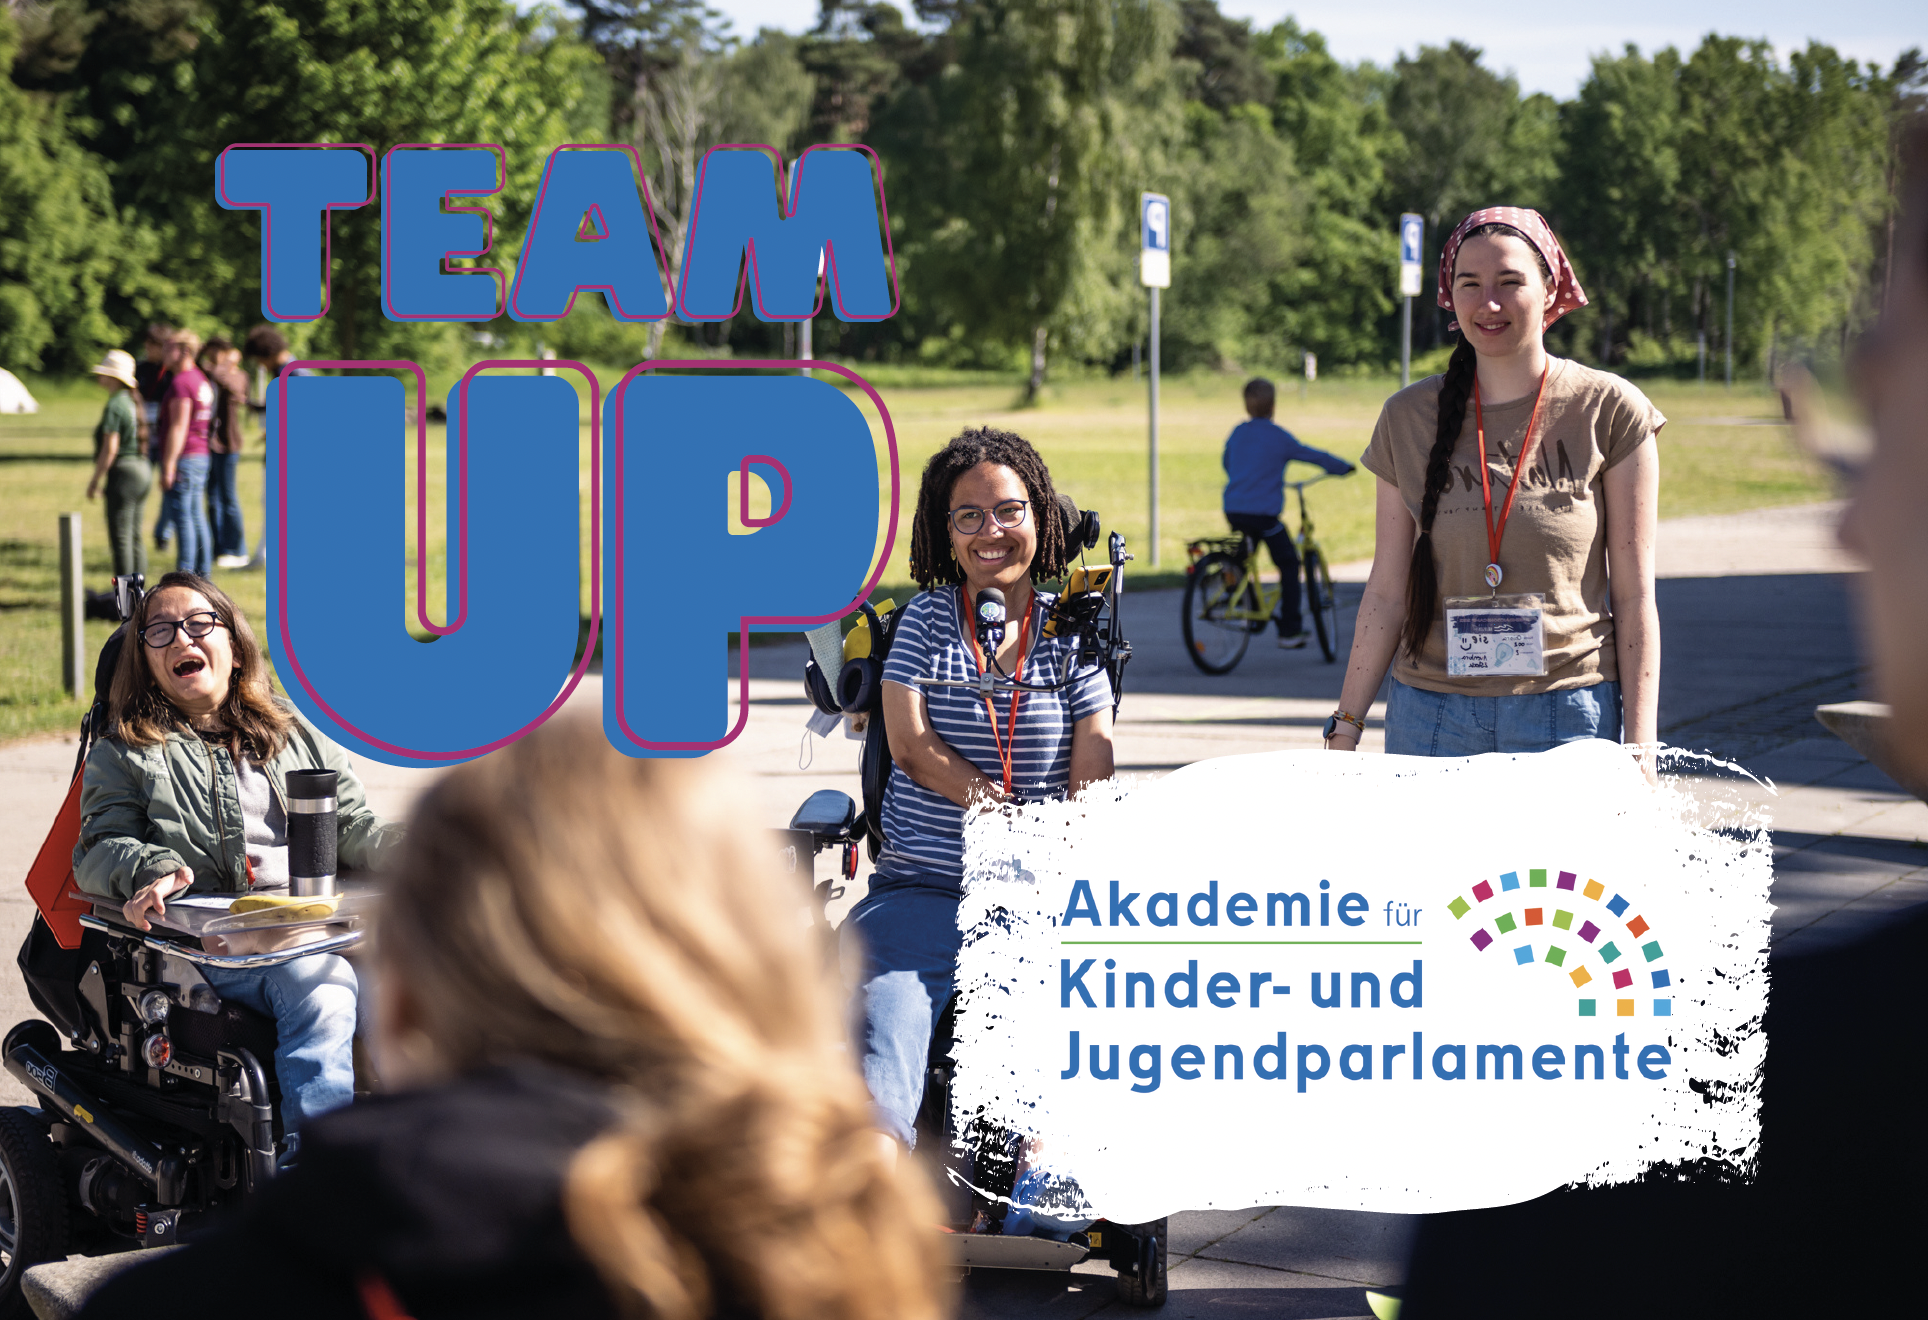 Das Bild zeigt drei junge Menschen, die in die Kamera lachen. Auf dem Bild steht: Team Up und Akademie für Kinder- und Jugendparlamente